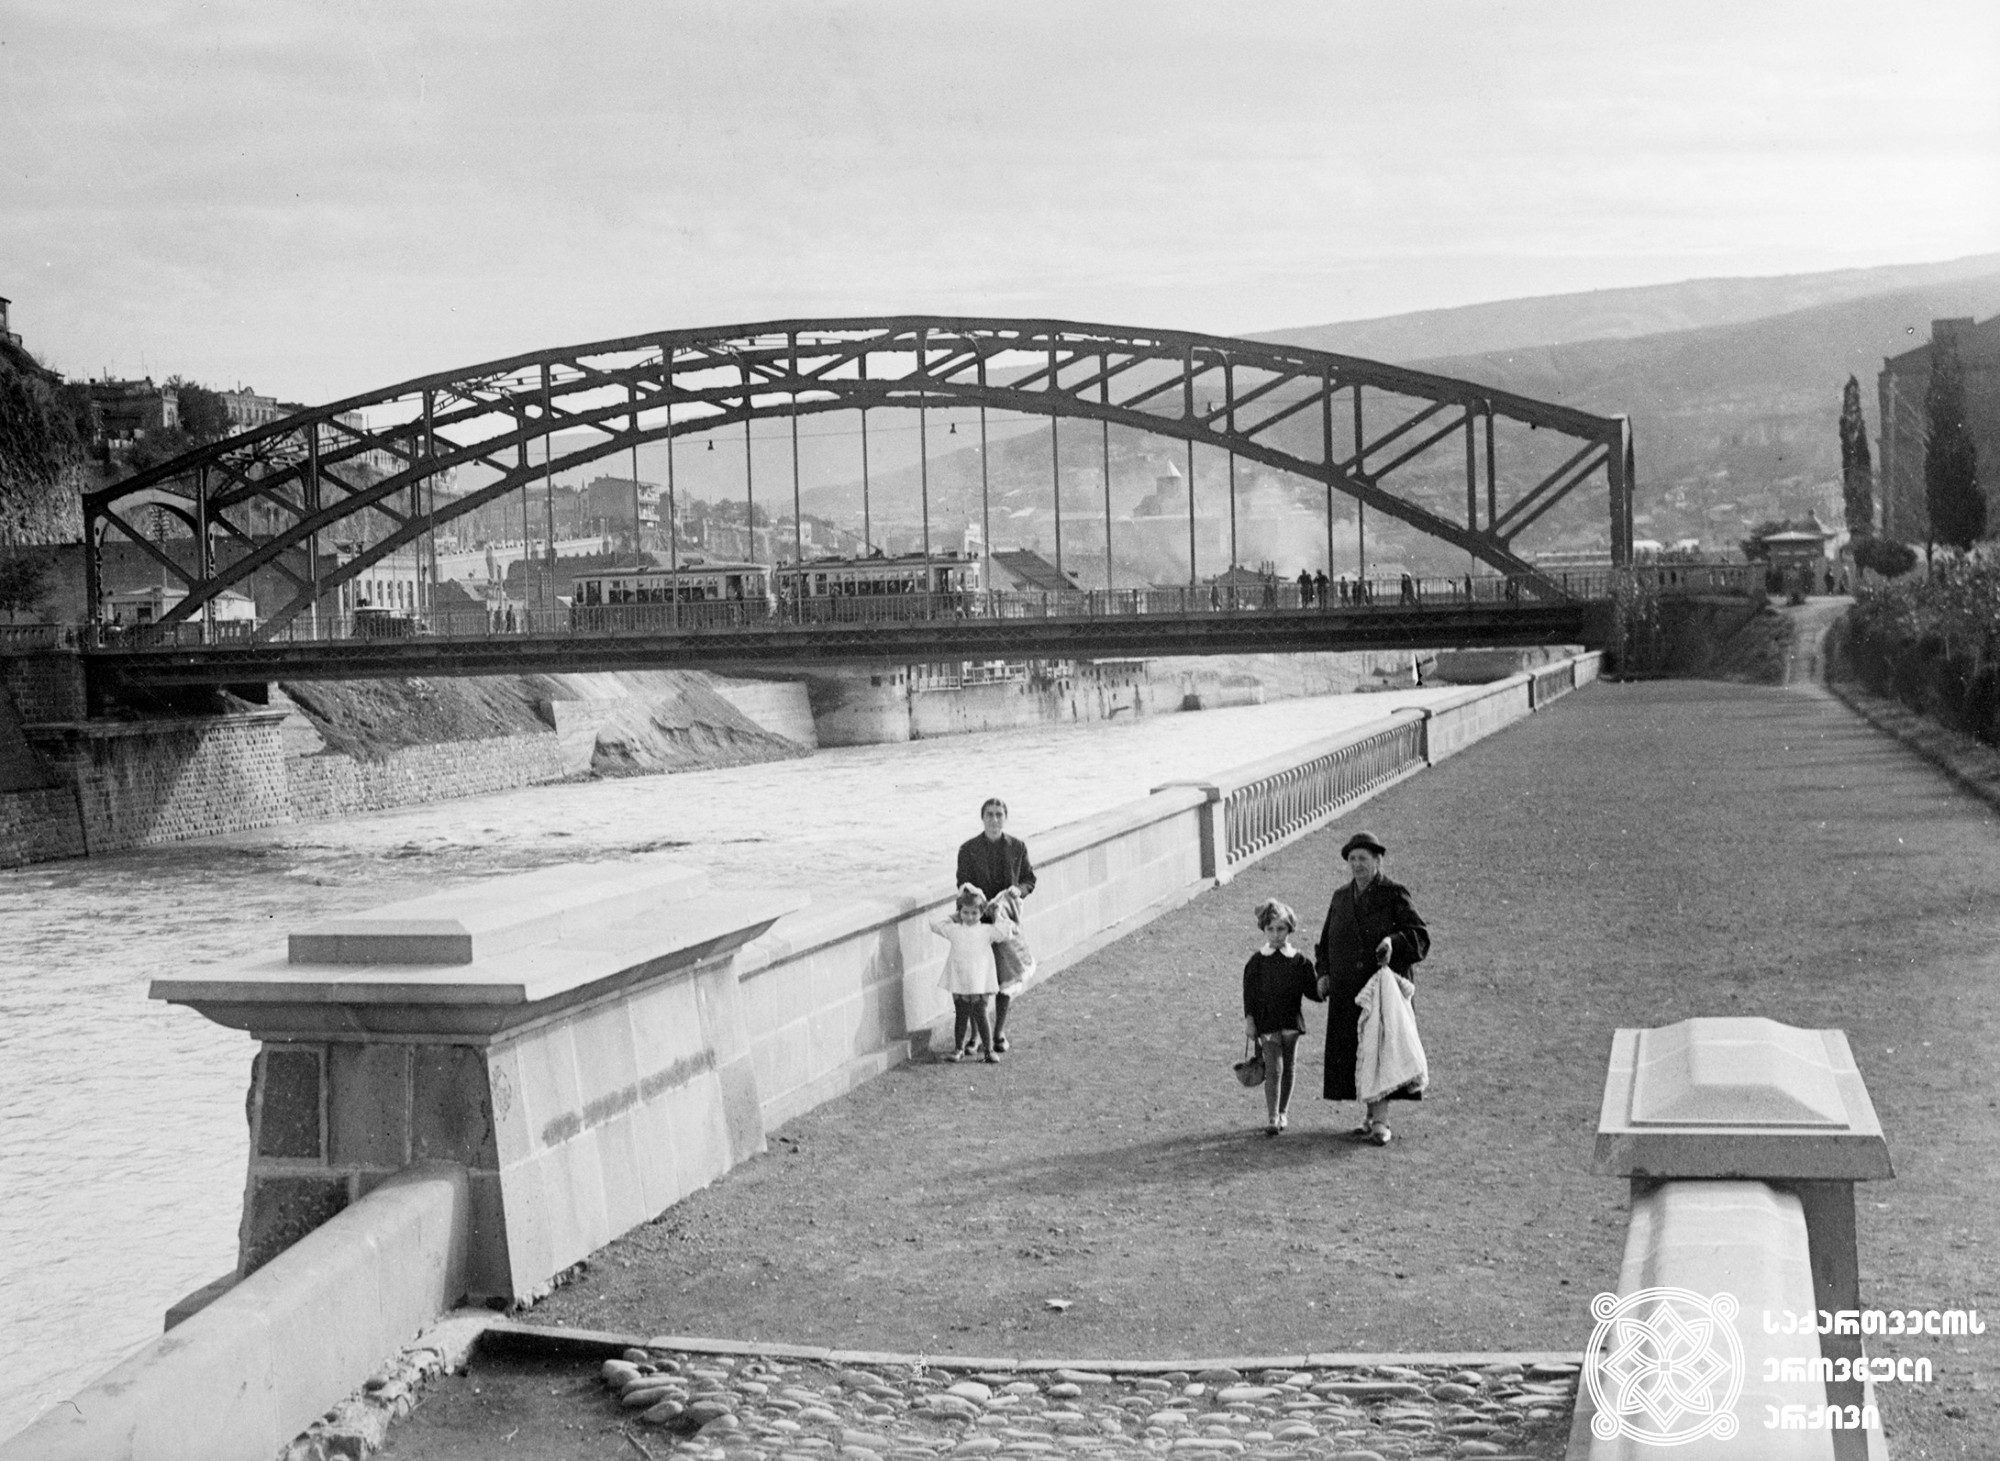 ივან კალიაევის სახელობის ხიდი და ხედი სტალინის სახელობის სანაპიროს ახალი ნაწილიდან (დღევანდელი ბარათაშვილის ხიდი და მიმდებარე ტერიტორია). თბილისი. <br> ფოტო:  ვ. ჩერკასოვი.  <br> 1940.  <br>
Ivan Kaliaev bridge and the view from the new part of Stalin Embankment (today Baratashvili Bridge area). Tbilisi.  <br> Photo by V. Cherkasov.  <br>1940.